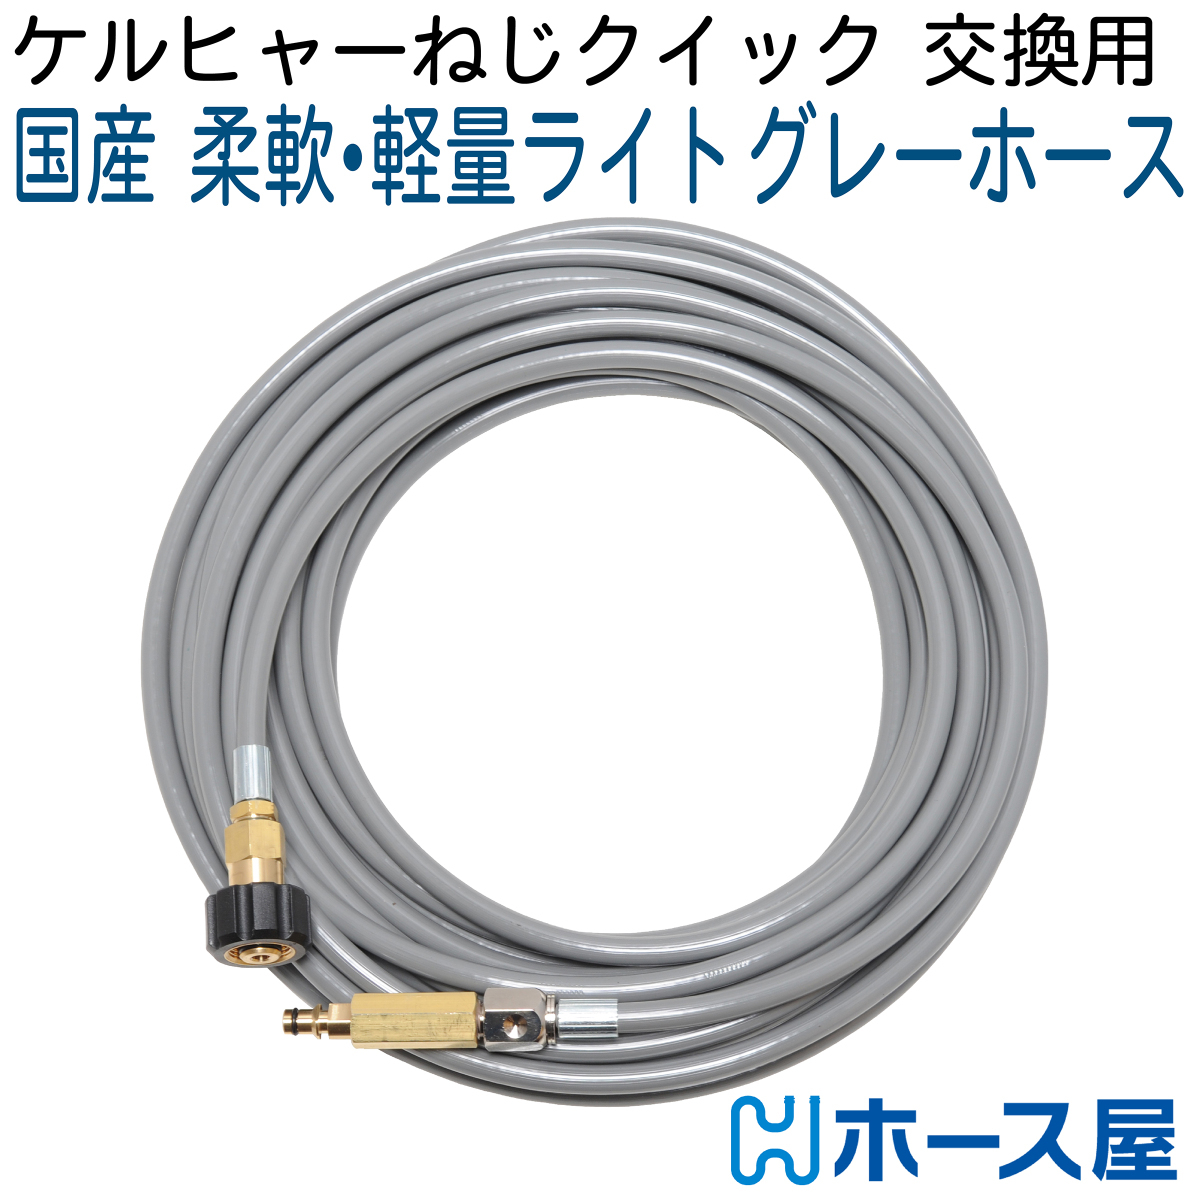 日本に 【10M】ケルヒャー K2クラシックなど 手回しネジ-クイックコネクト対応 高圧洗浄機